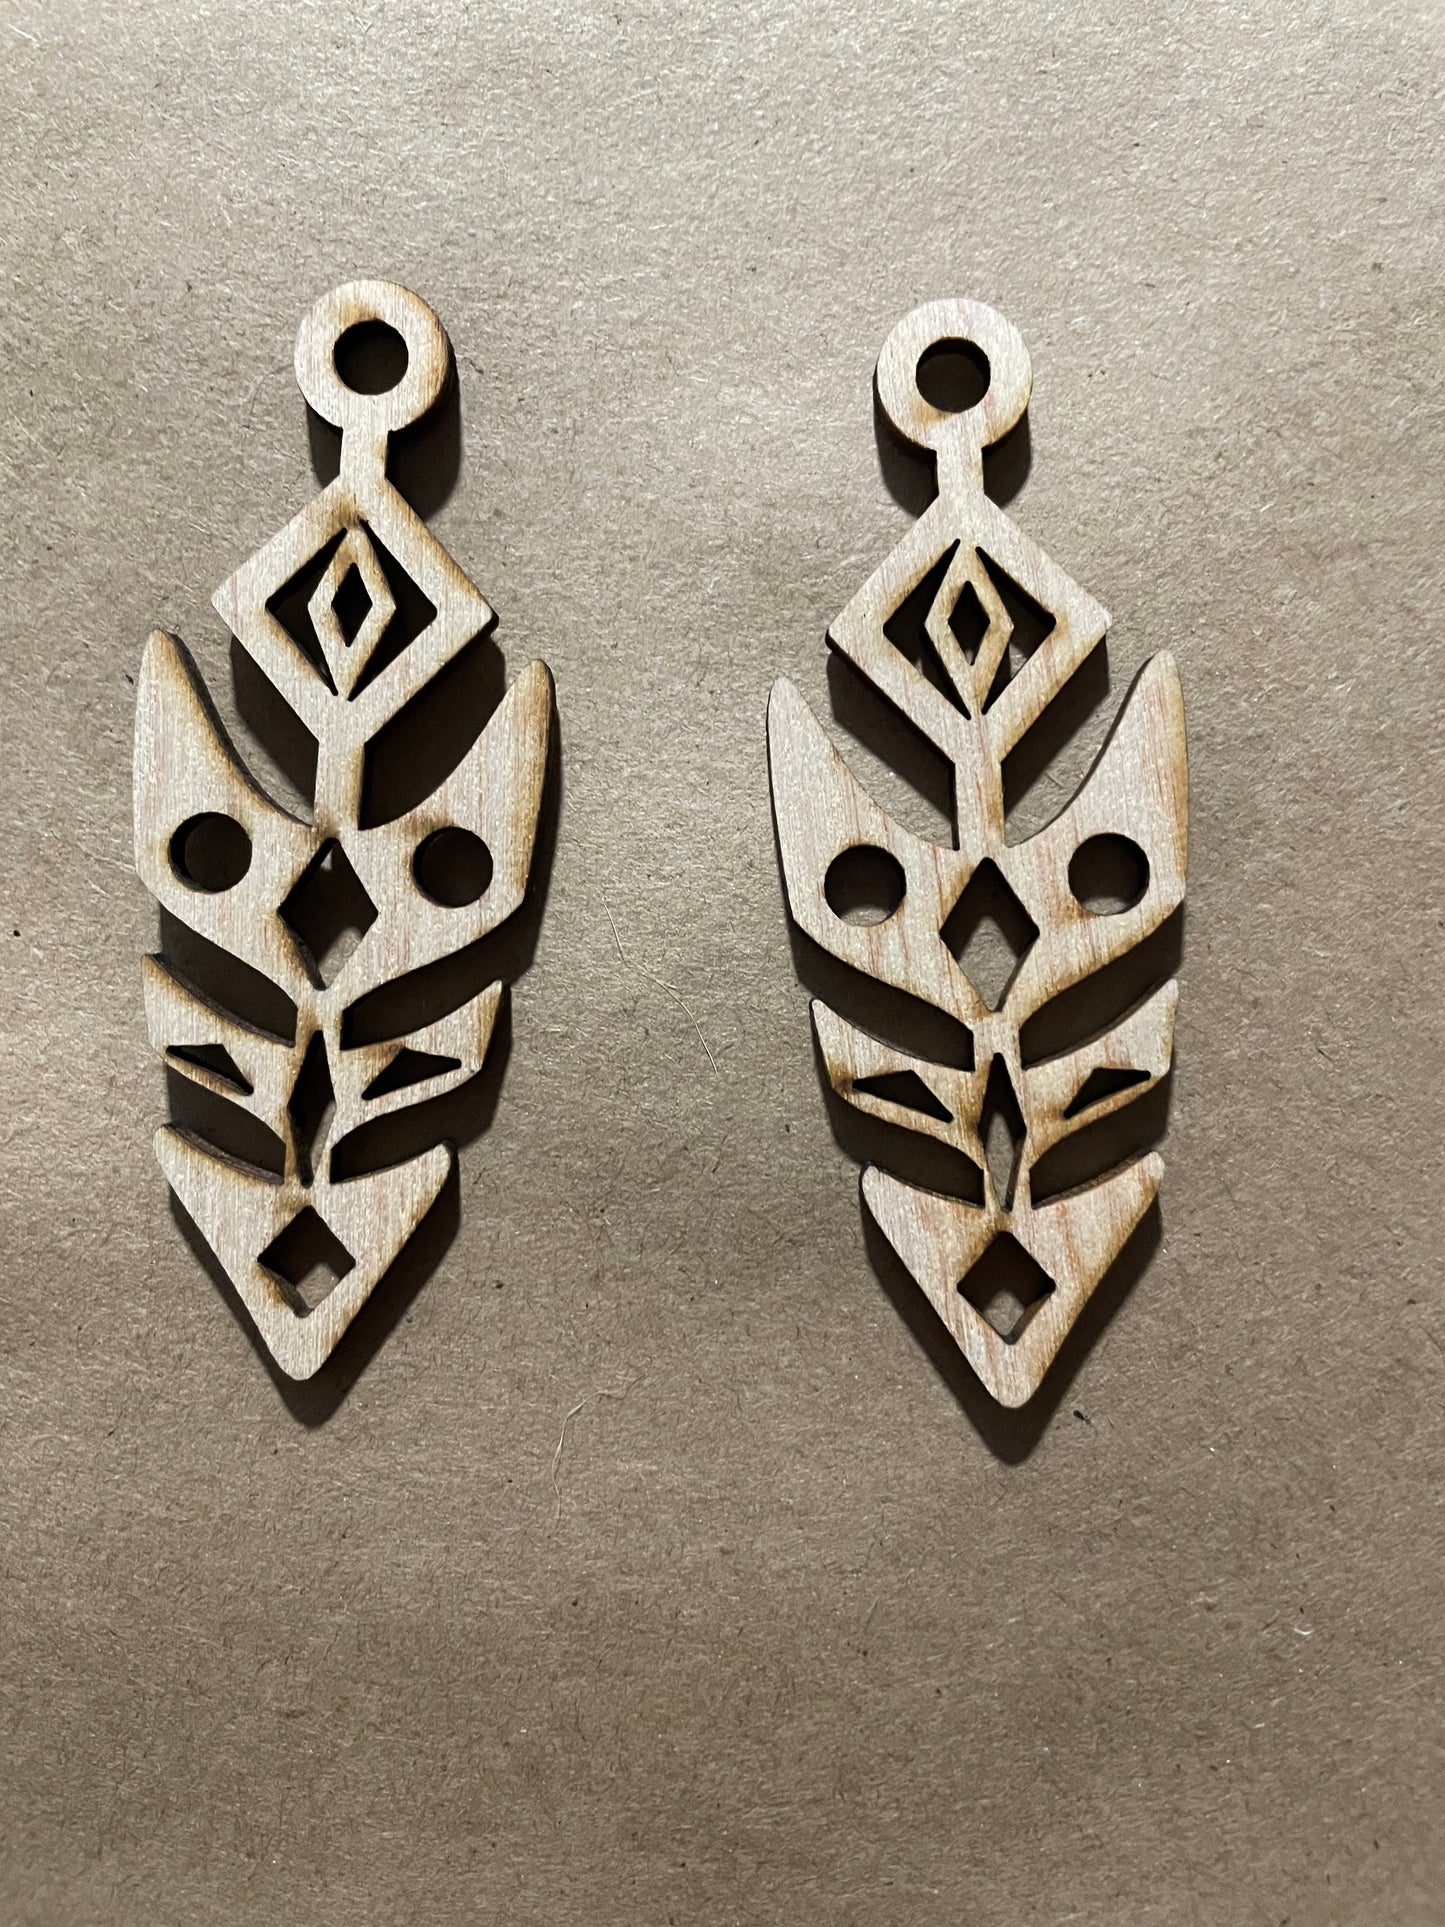 Arrowhead Blank Wood Earrings. DIY jewelry. Unfinished laser cut wood jewelry. Wood earring blanks. Unfinished wood earrings. Wood jewelry blanks.